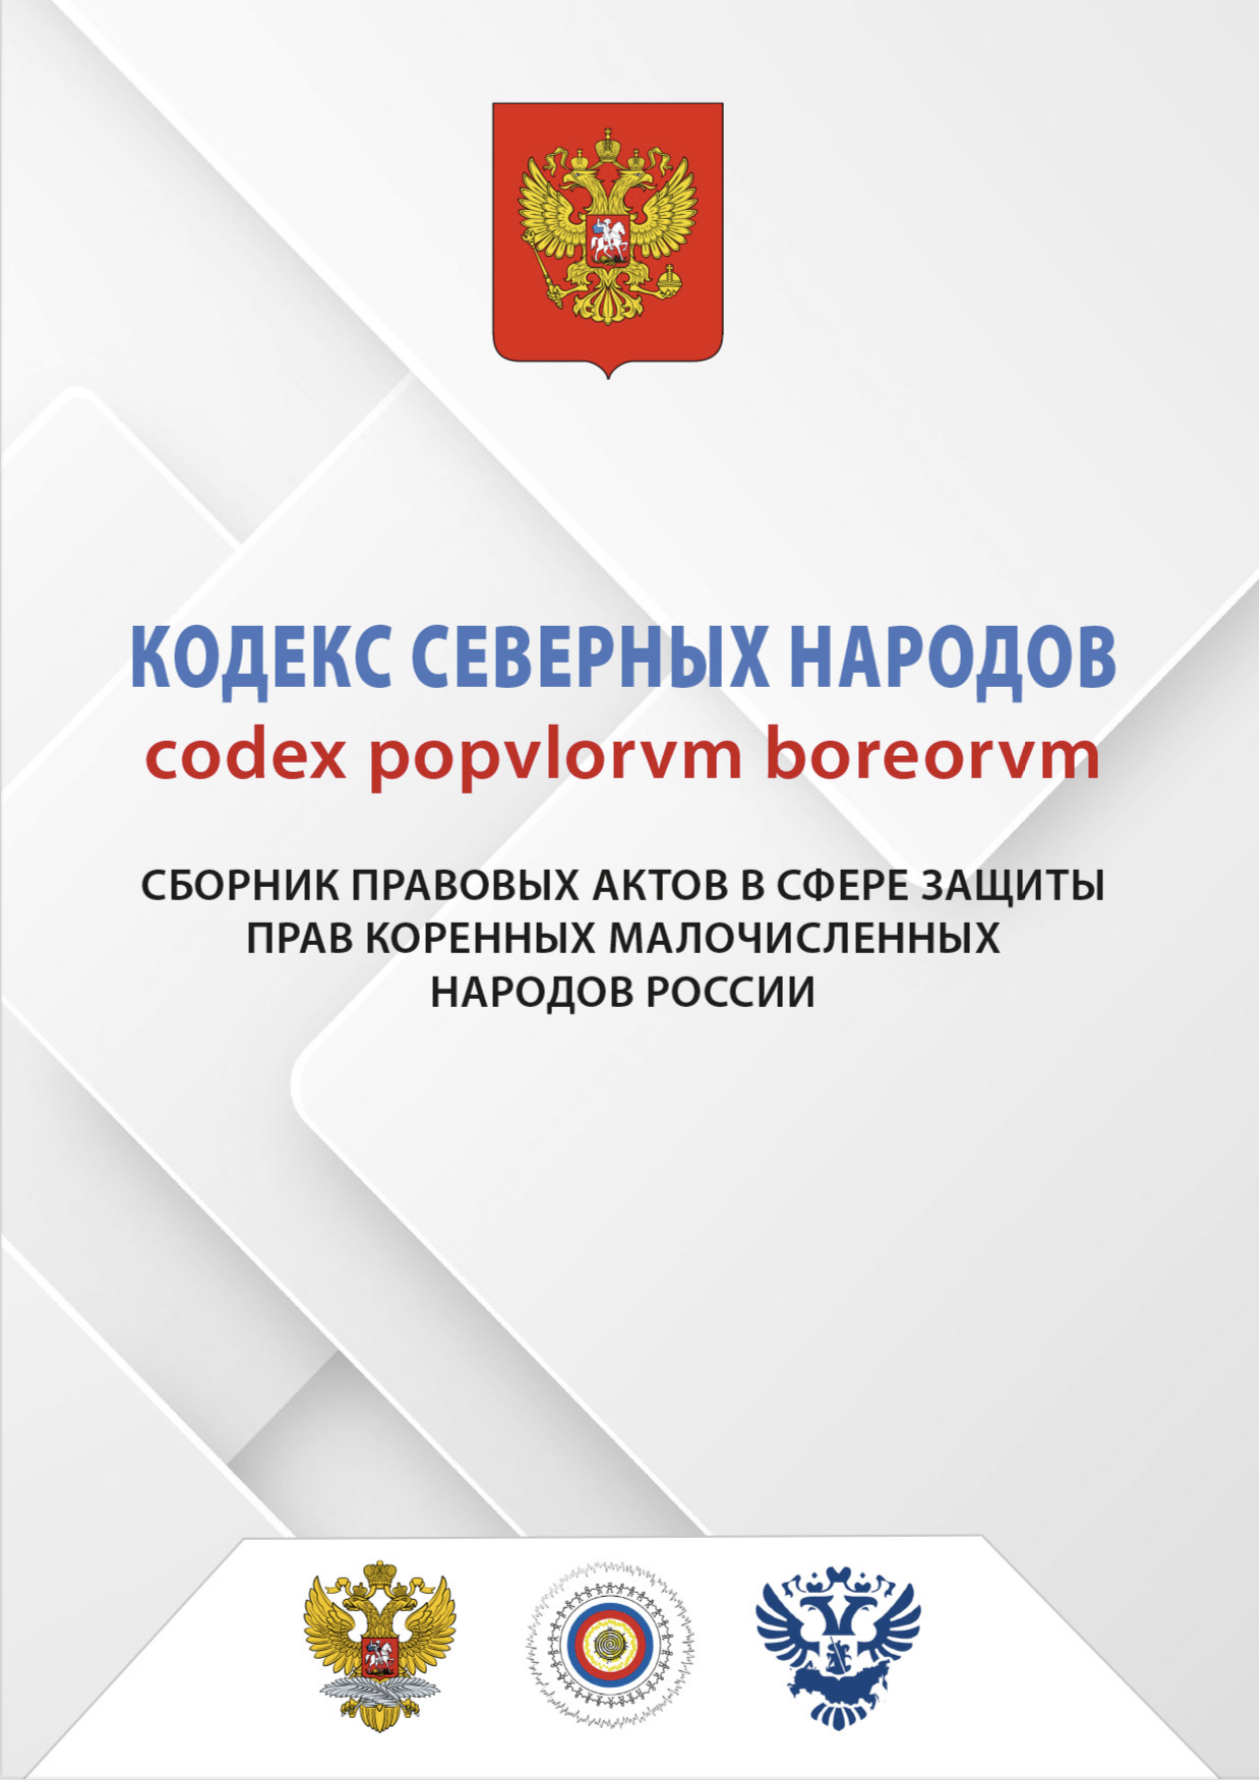 Сборник правовых актов в сфере защиты КМН России 